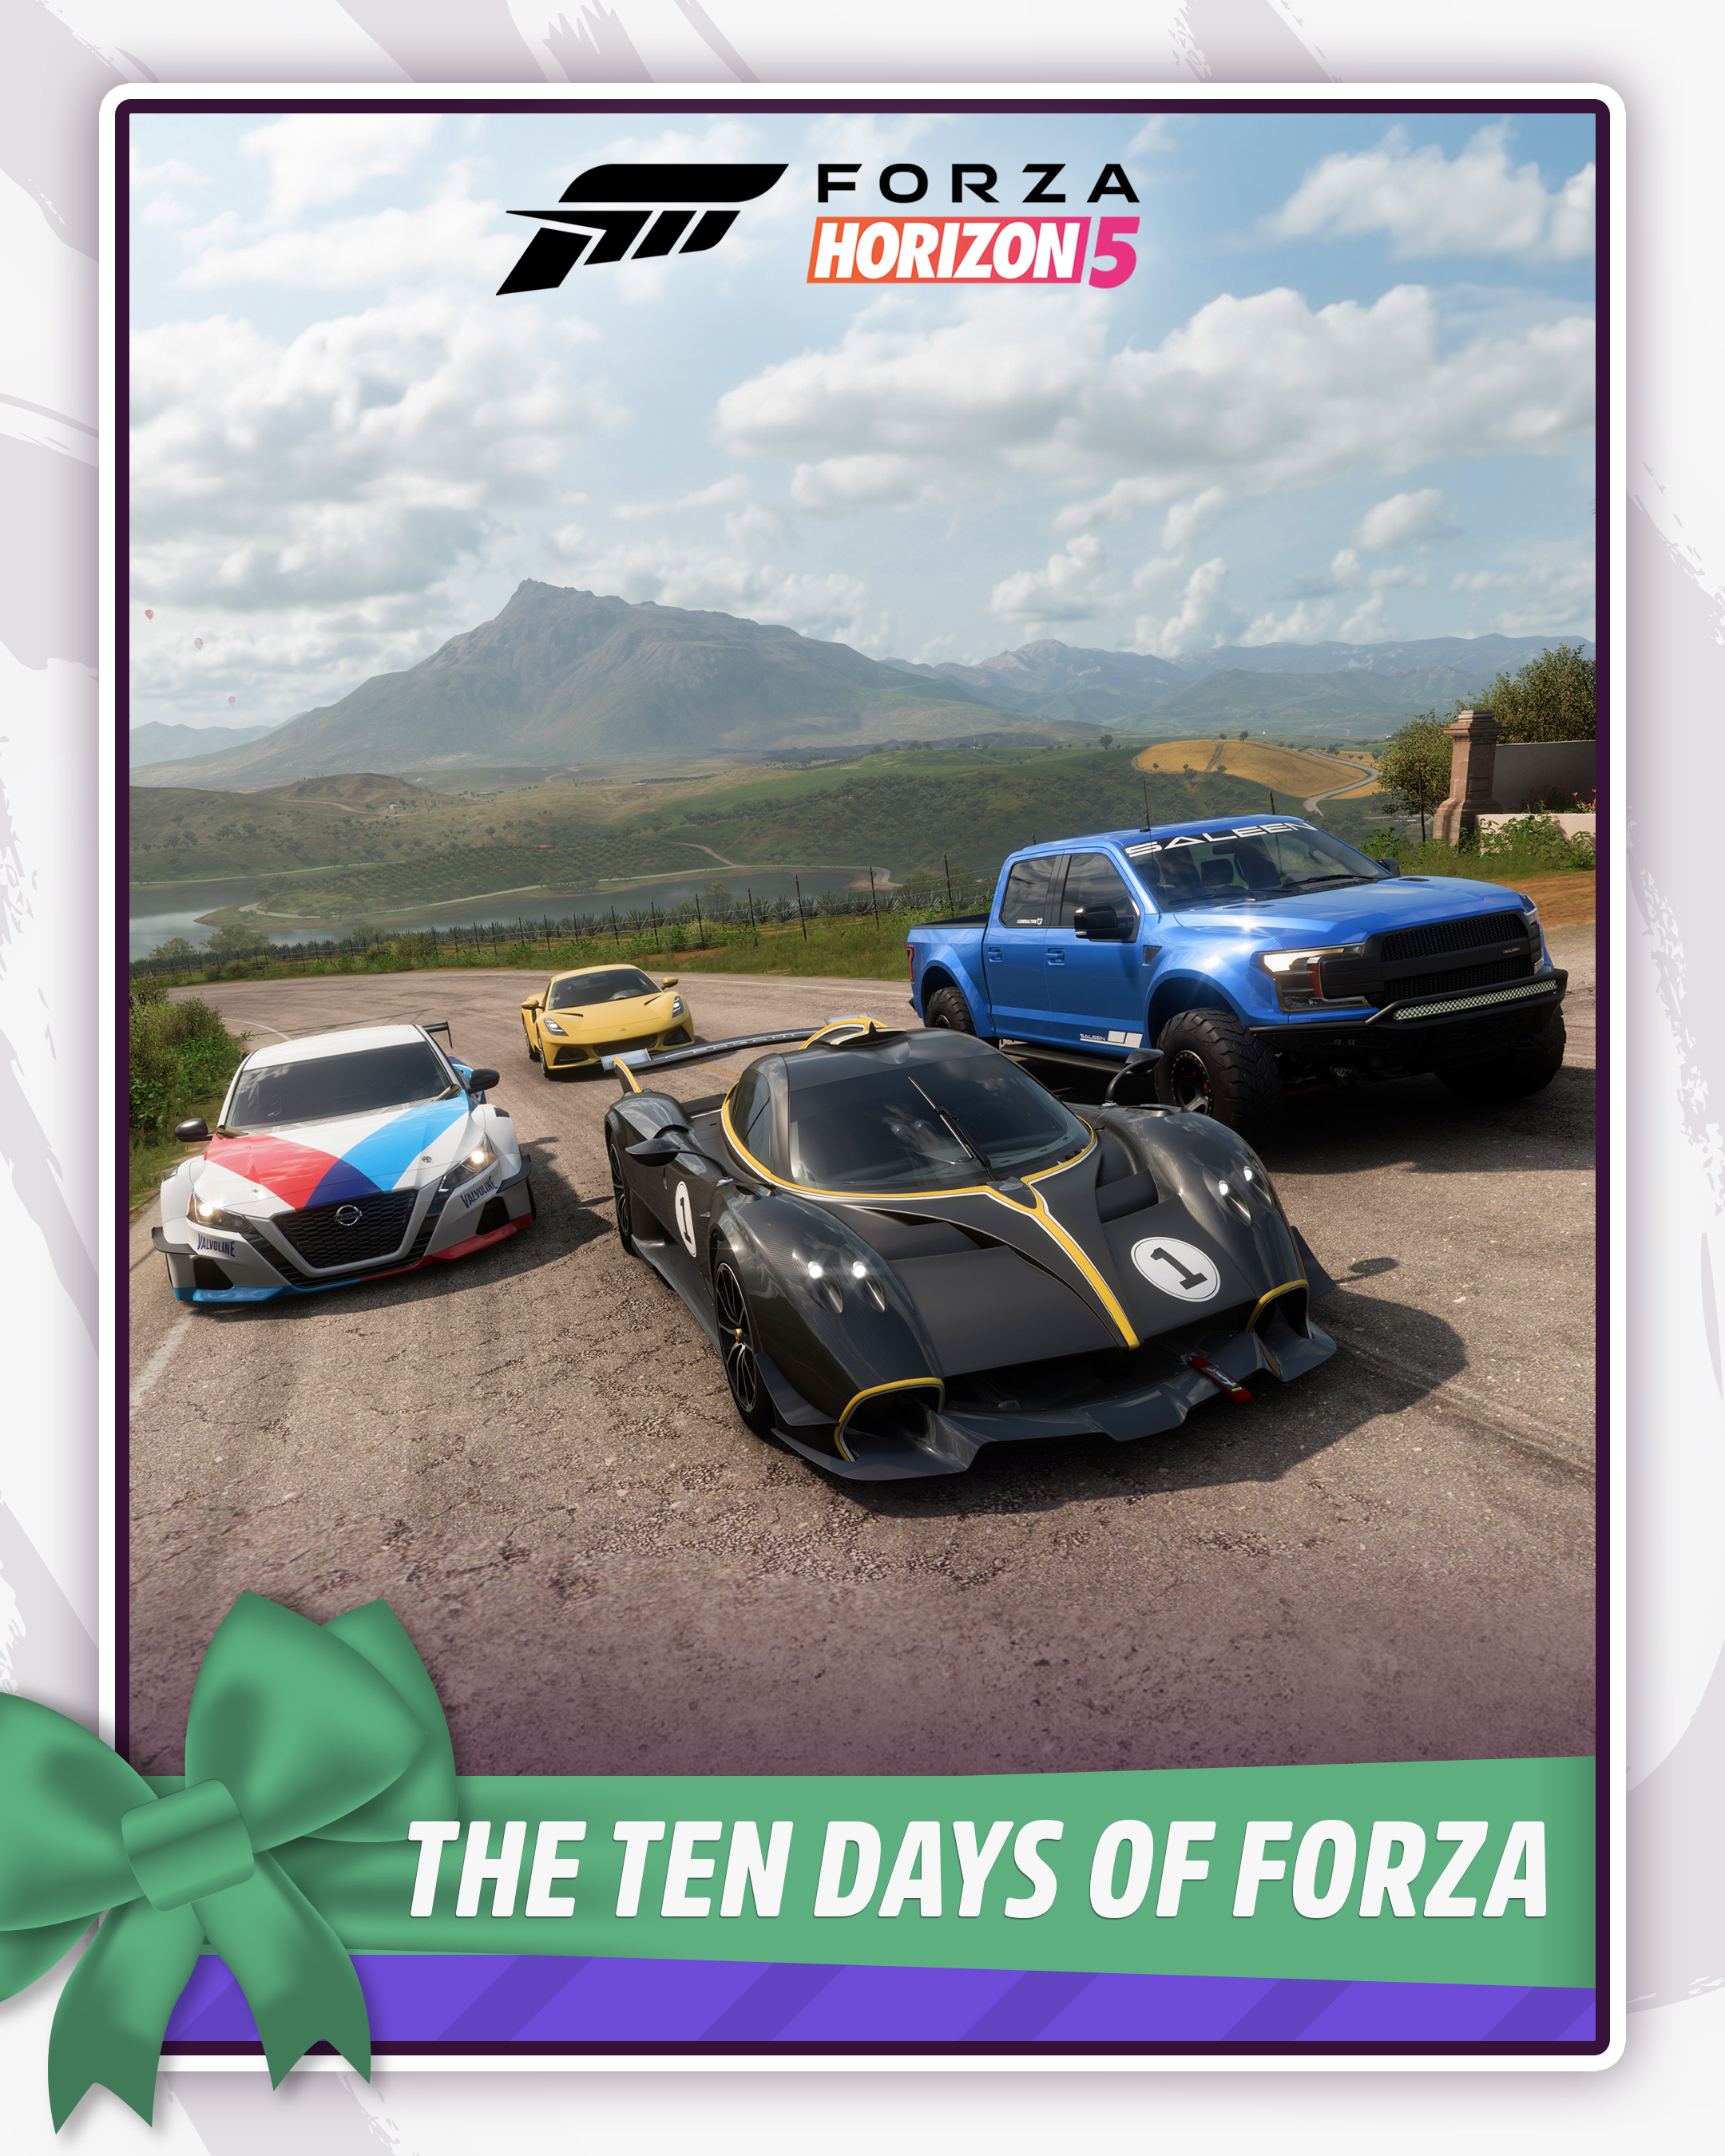 Forza Motorsport 6 poderá ser jogado de graça até o dia 29 de agosto